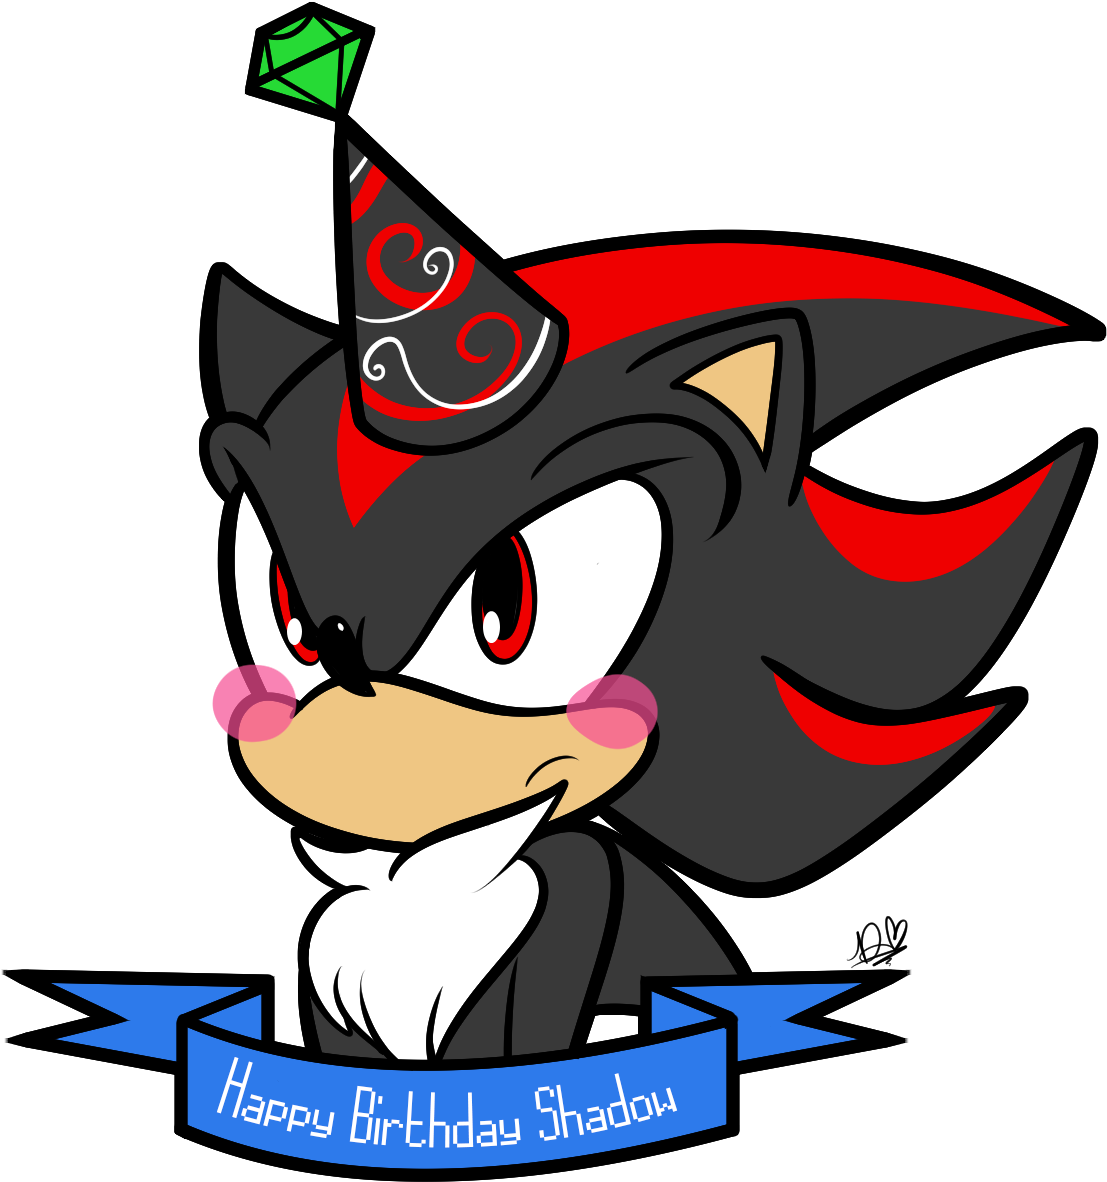 Happy Birthday Shadow - Shadow The Hedgehog (1148x1290) .